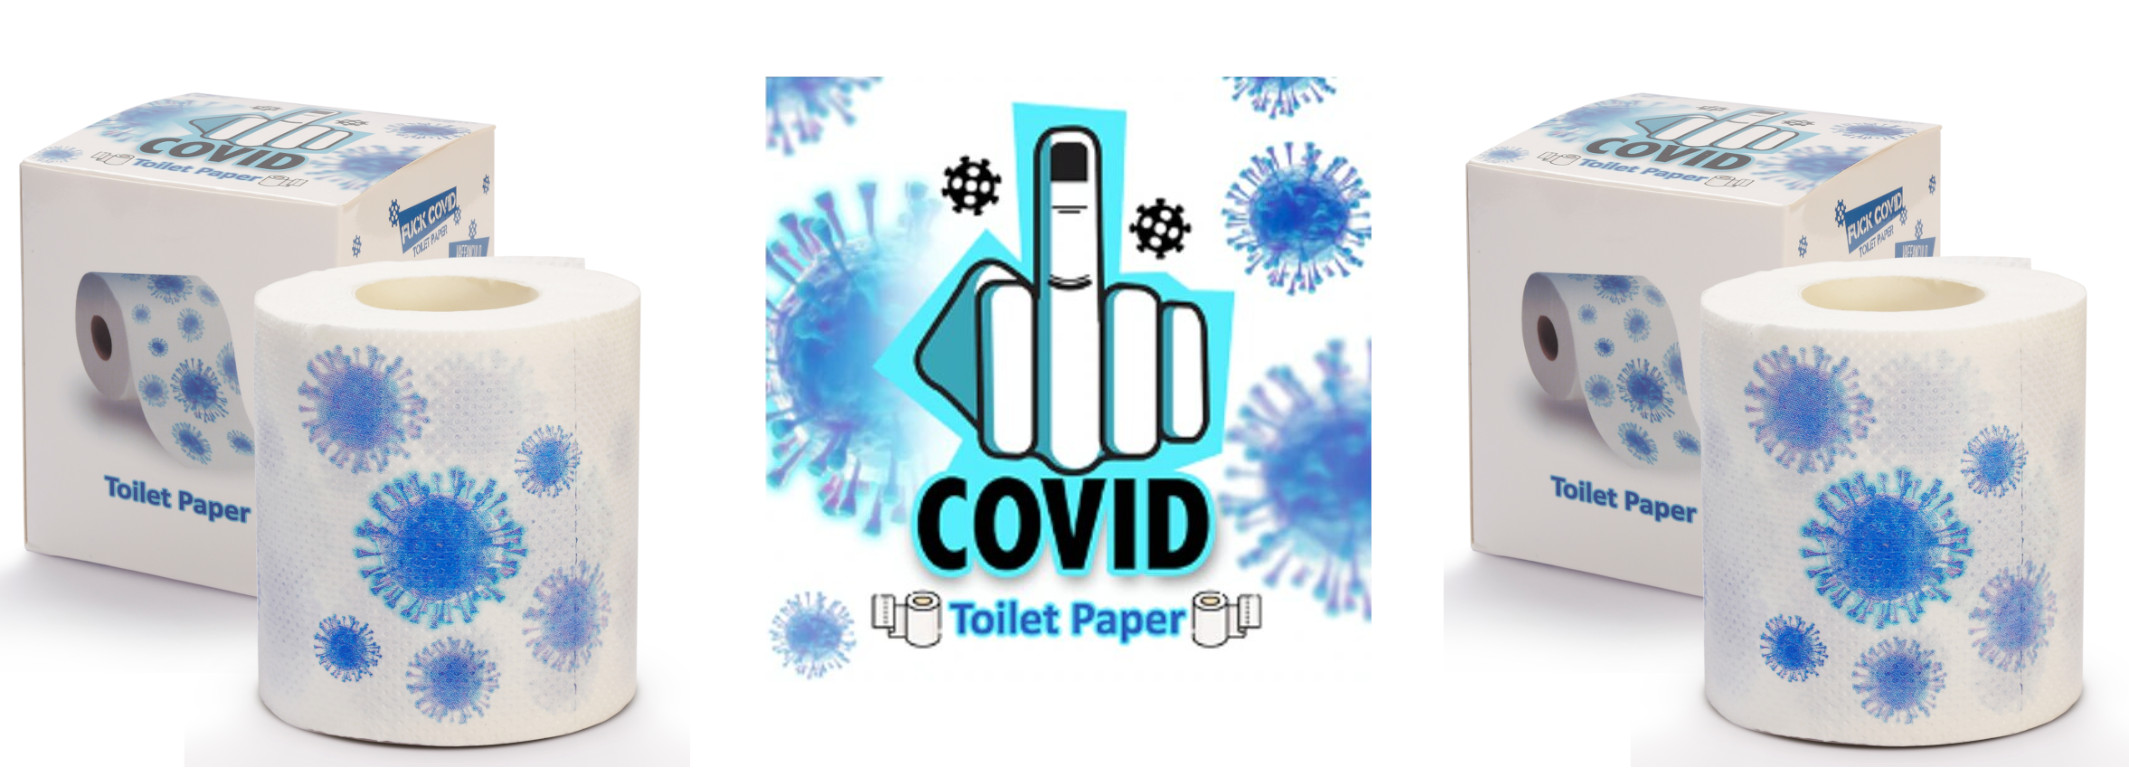 Fuck COVID Toilet Paper